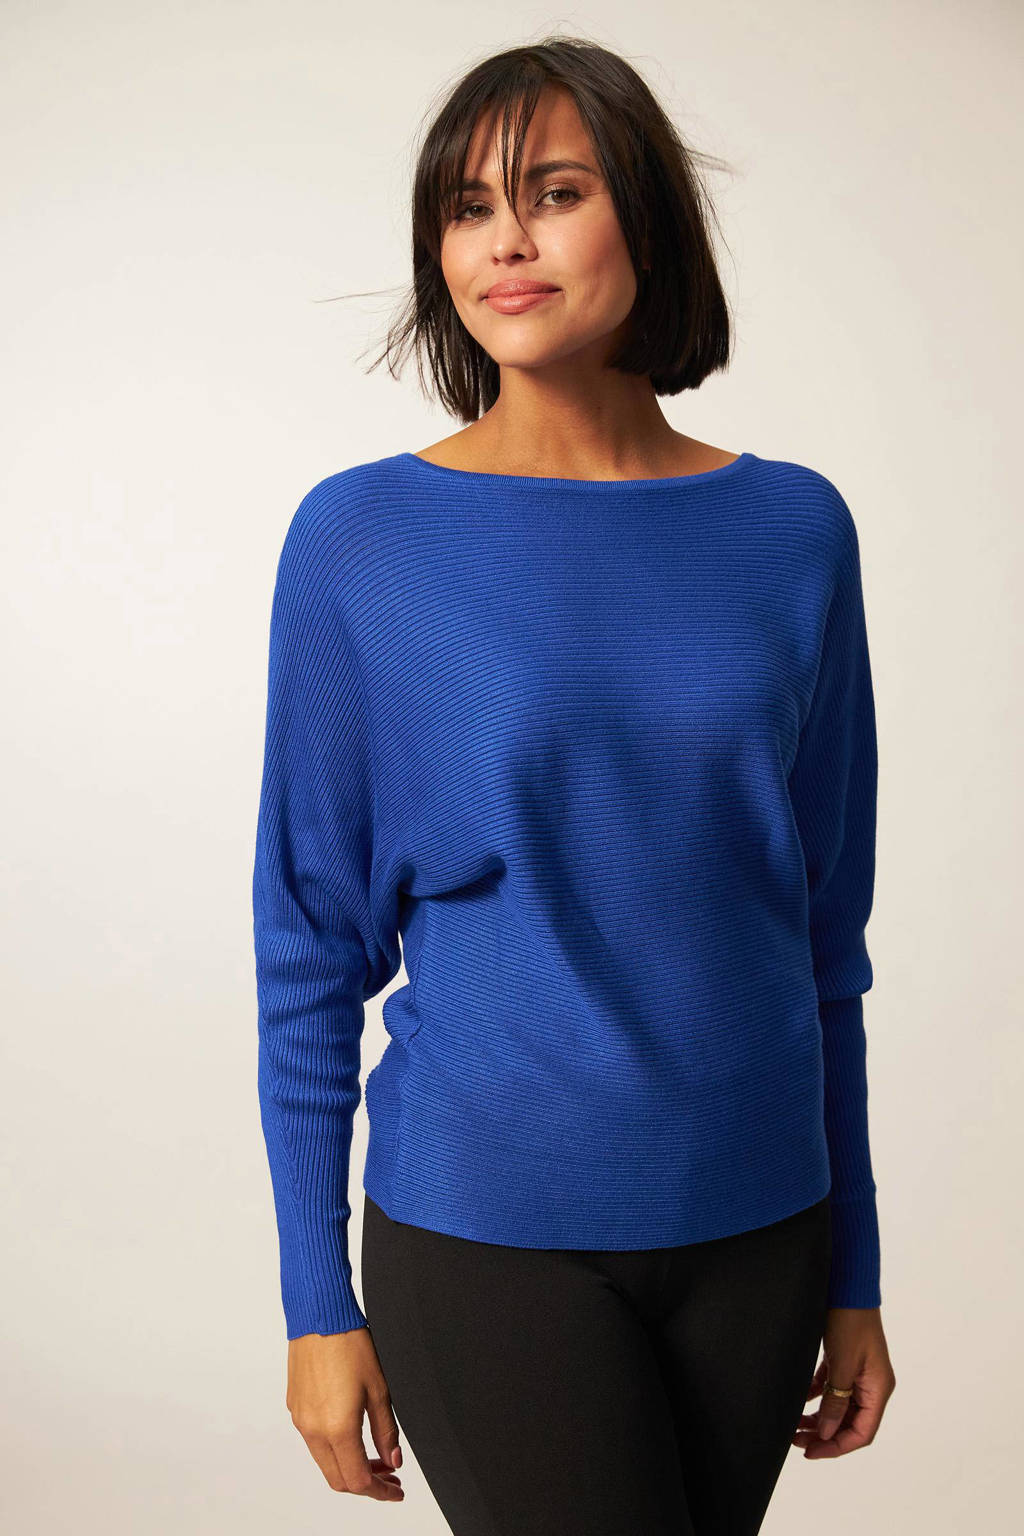 praktijk Optimistisch Verovering Miss Etam ribgebreide trui Letizia kobaltblauw | wehkamp